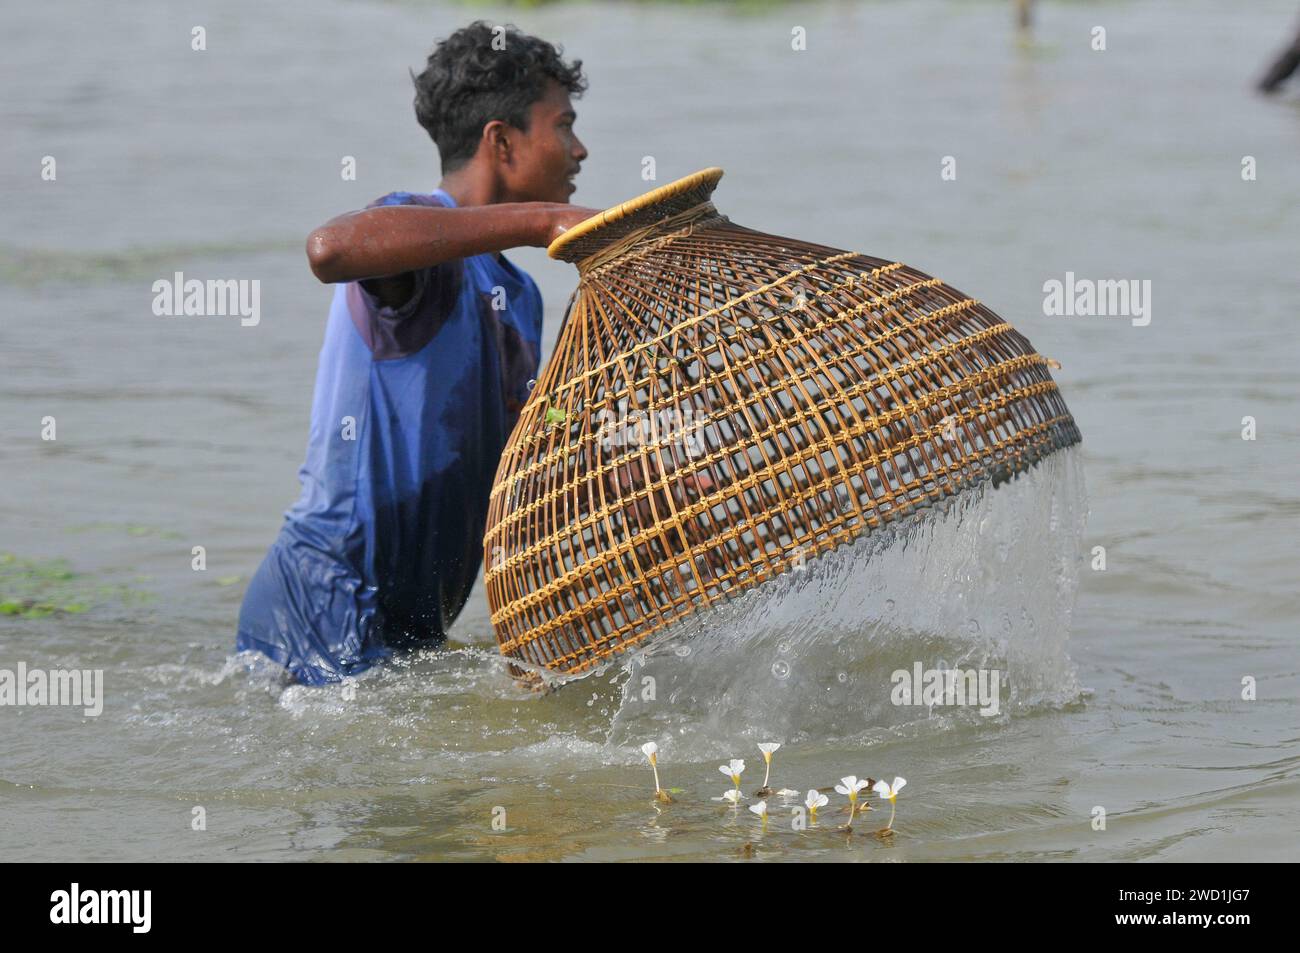 Le popolazioni rurali armate di trappole per pesci di bambù e reti da pesca artigianali prendono parte a una festa invernale di pesca bawa, che dura 100 anni, presso il Gowahori beel of Biswanath upazila a Sylhet. La gente del posto ha detto che il festival viene celebrato ogni anno nel primo giorno del mese di Bangla di Poush e, a parte la gente del posto, persone provenienti da diverse parti dell'Upozila si radunano al beel con diversi tipi di trappole da pesca per partecipare. Sylhet, Bangladesh. Foto Stock